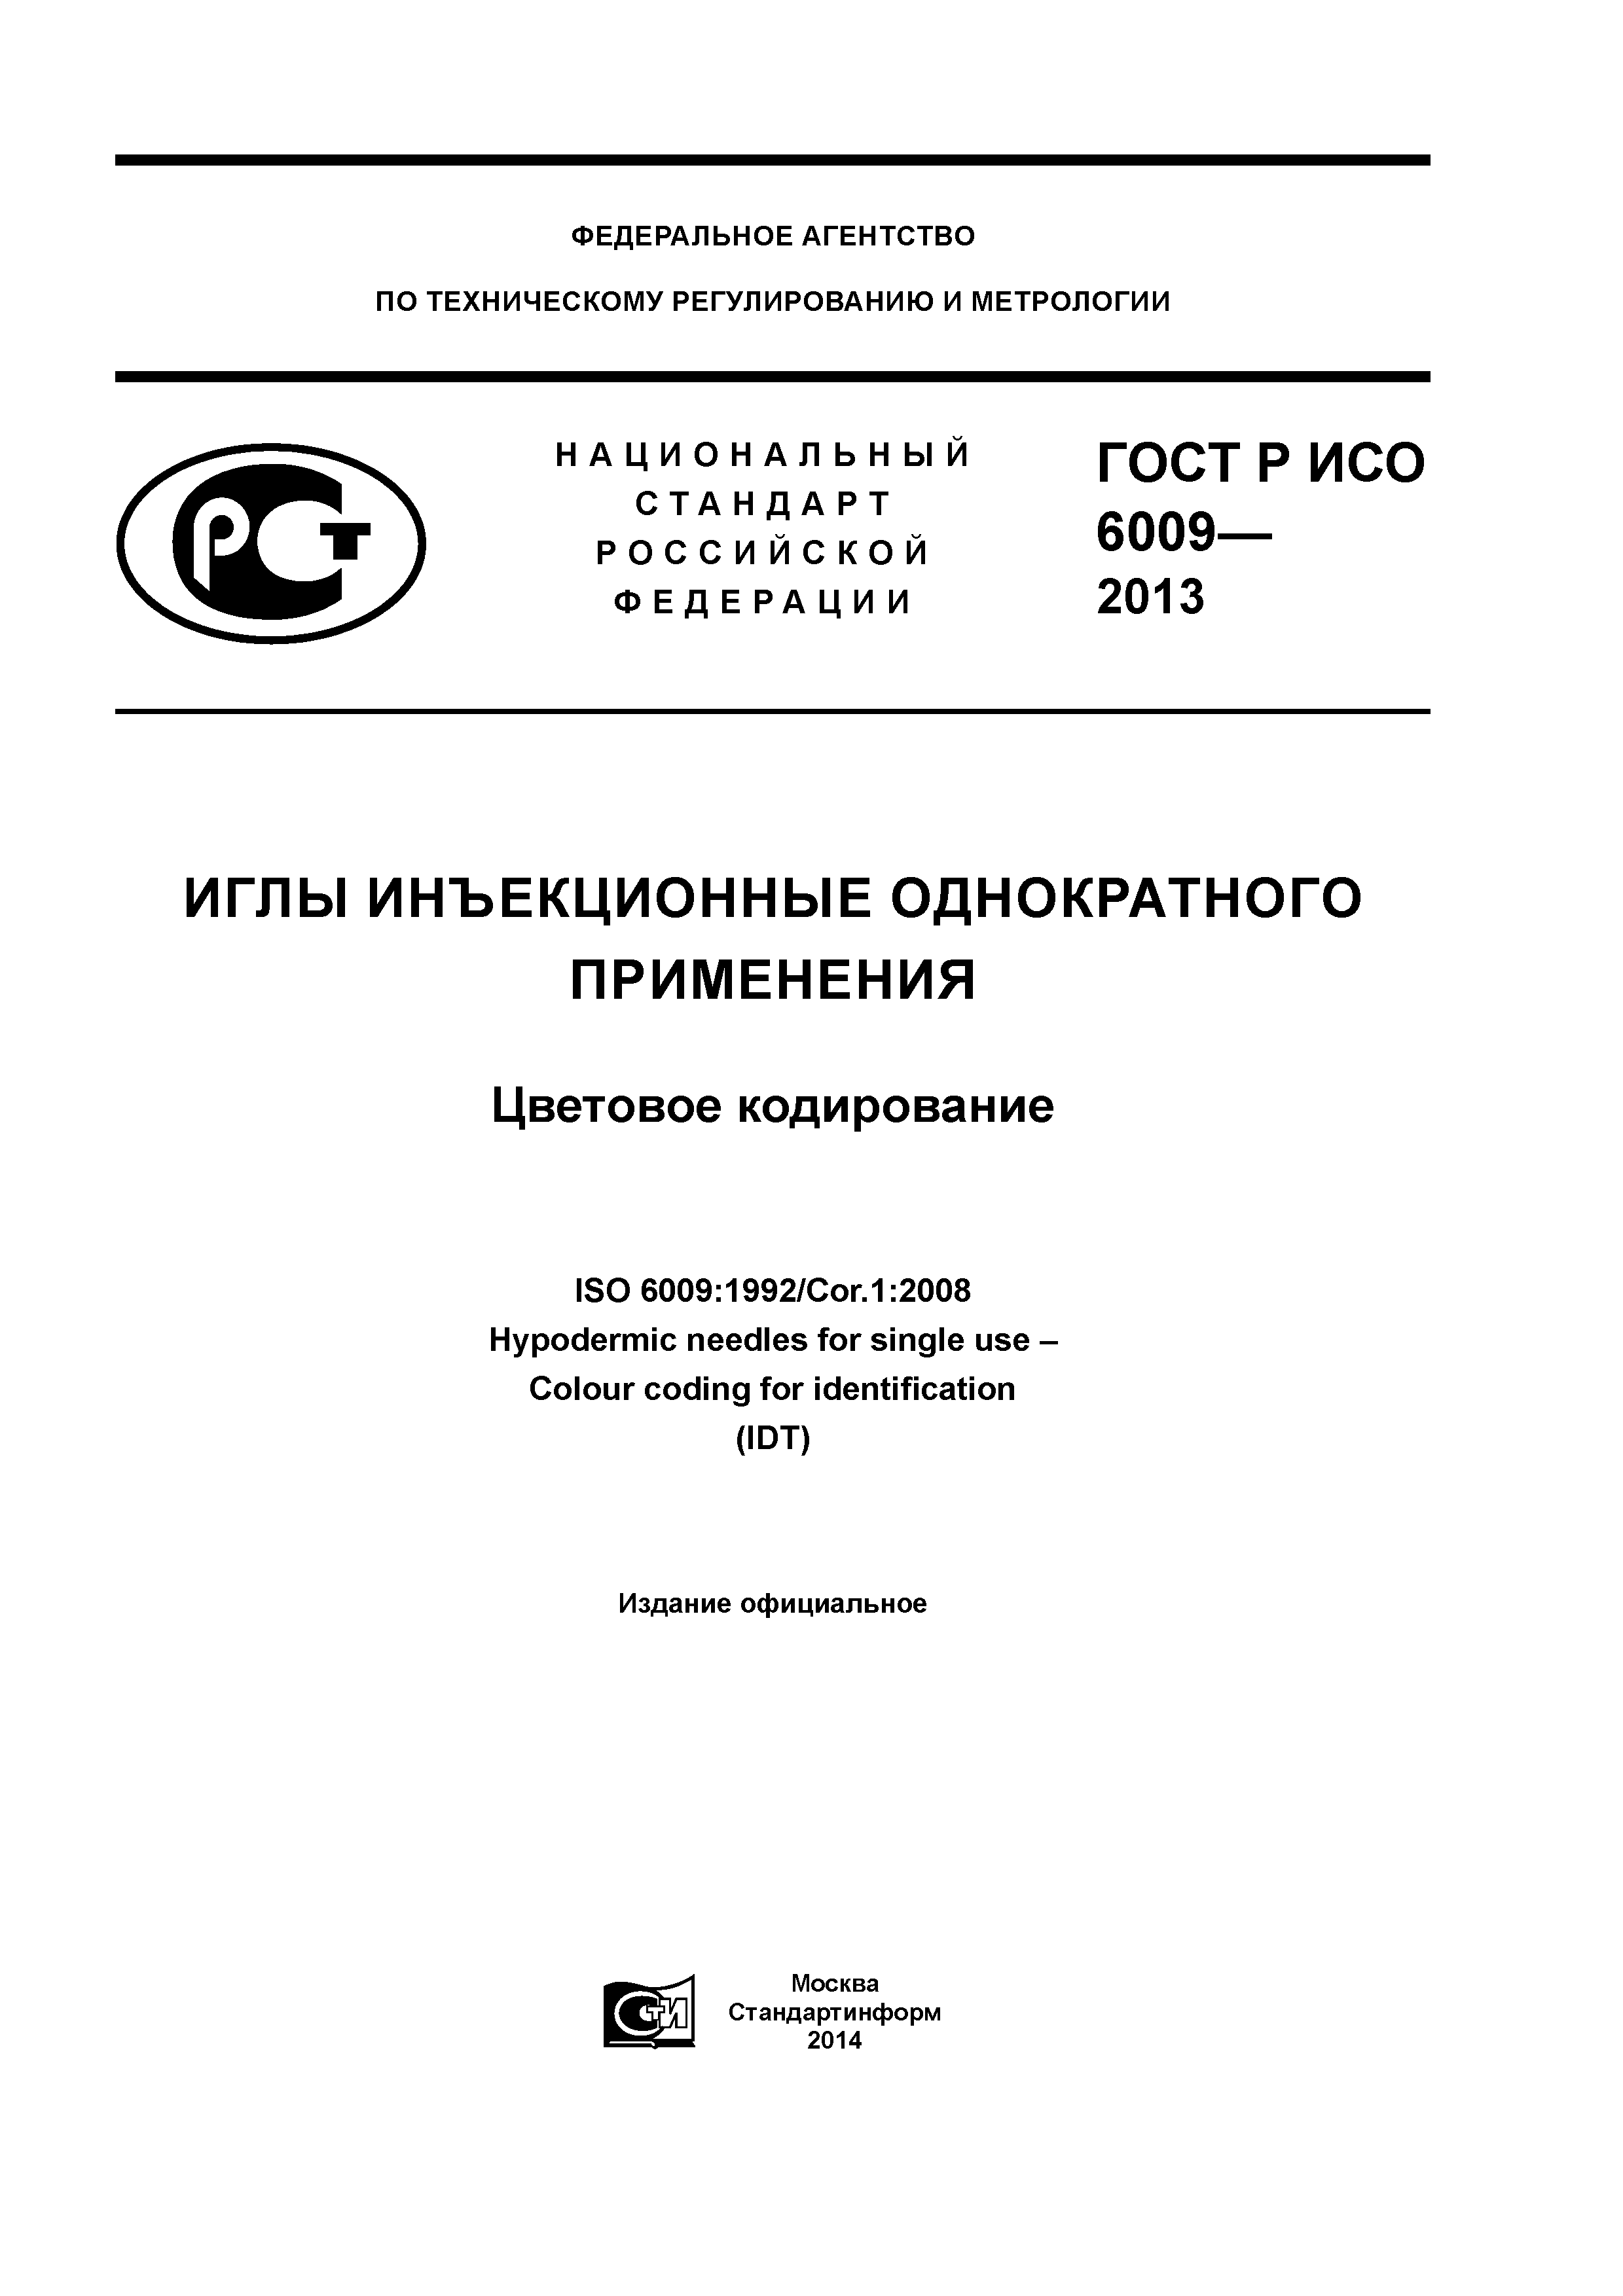 ГОСТ Р ИСО 6009-2013